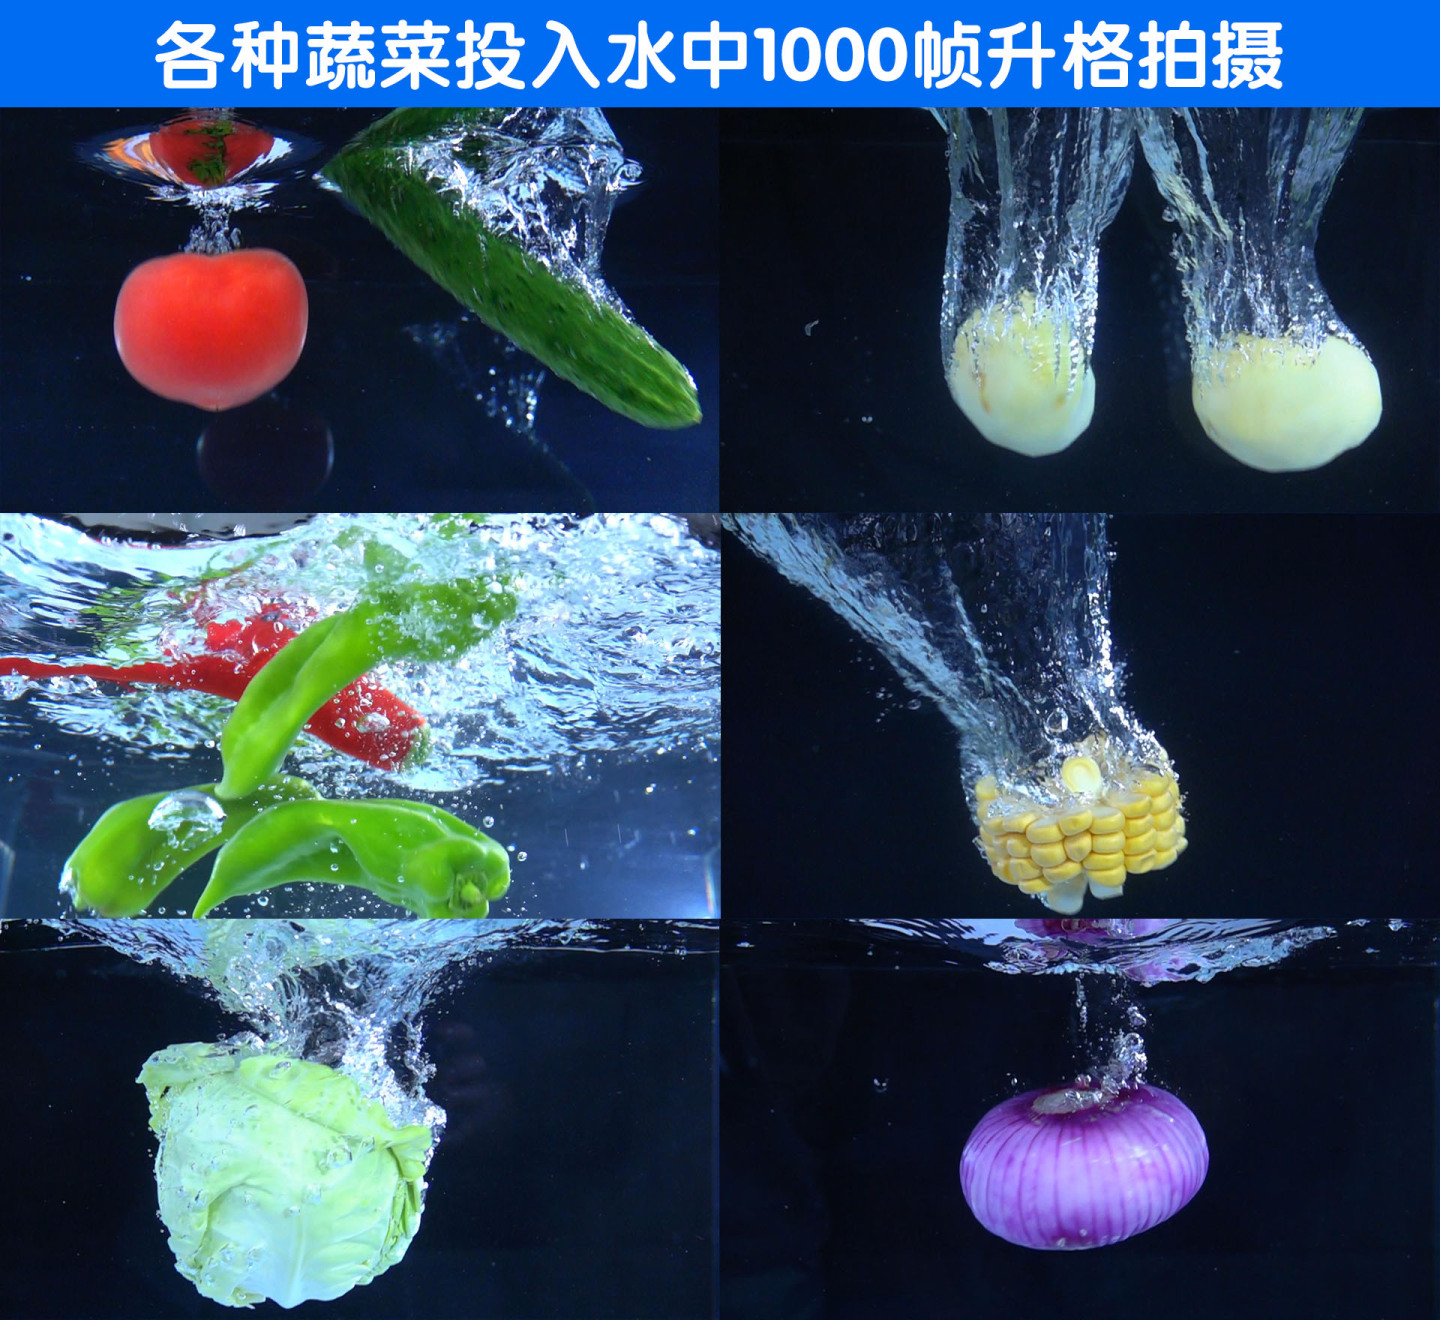 各种蔬菜投入水中升格拍摄